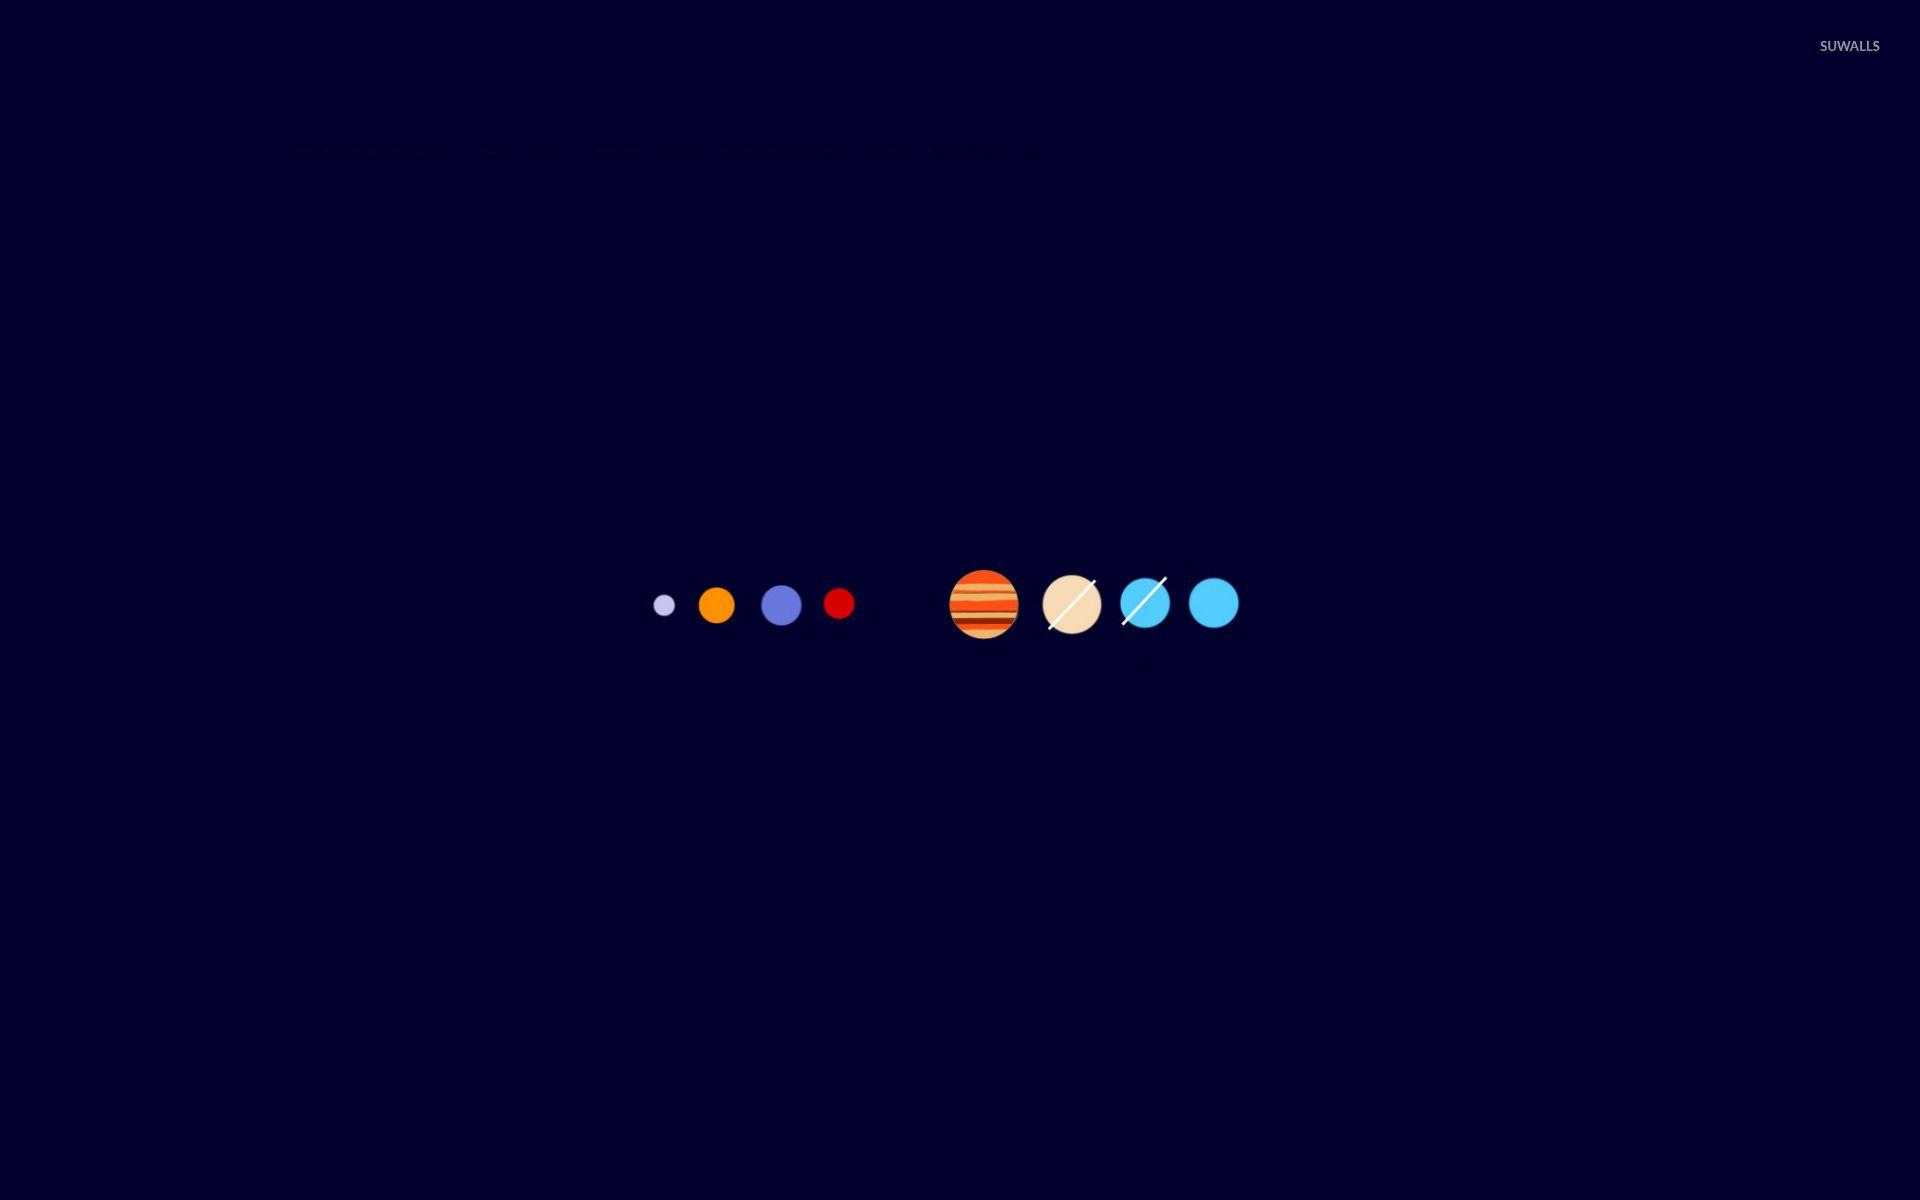 The solar system wallpaper wallpaper